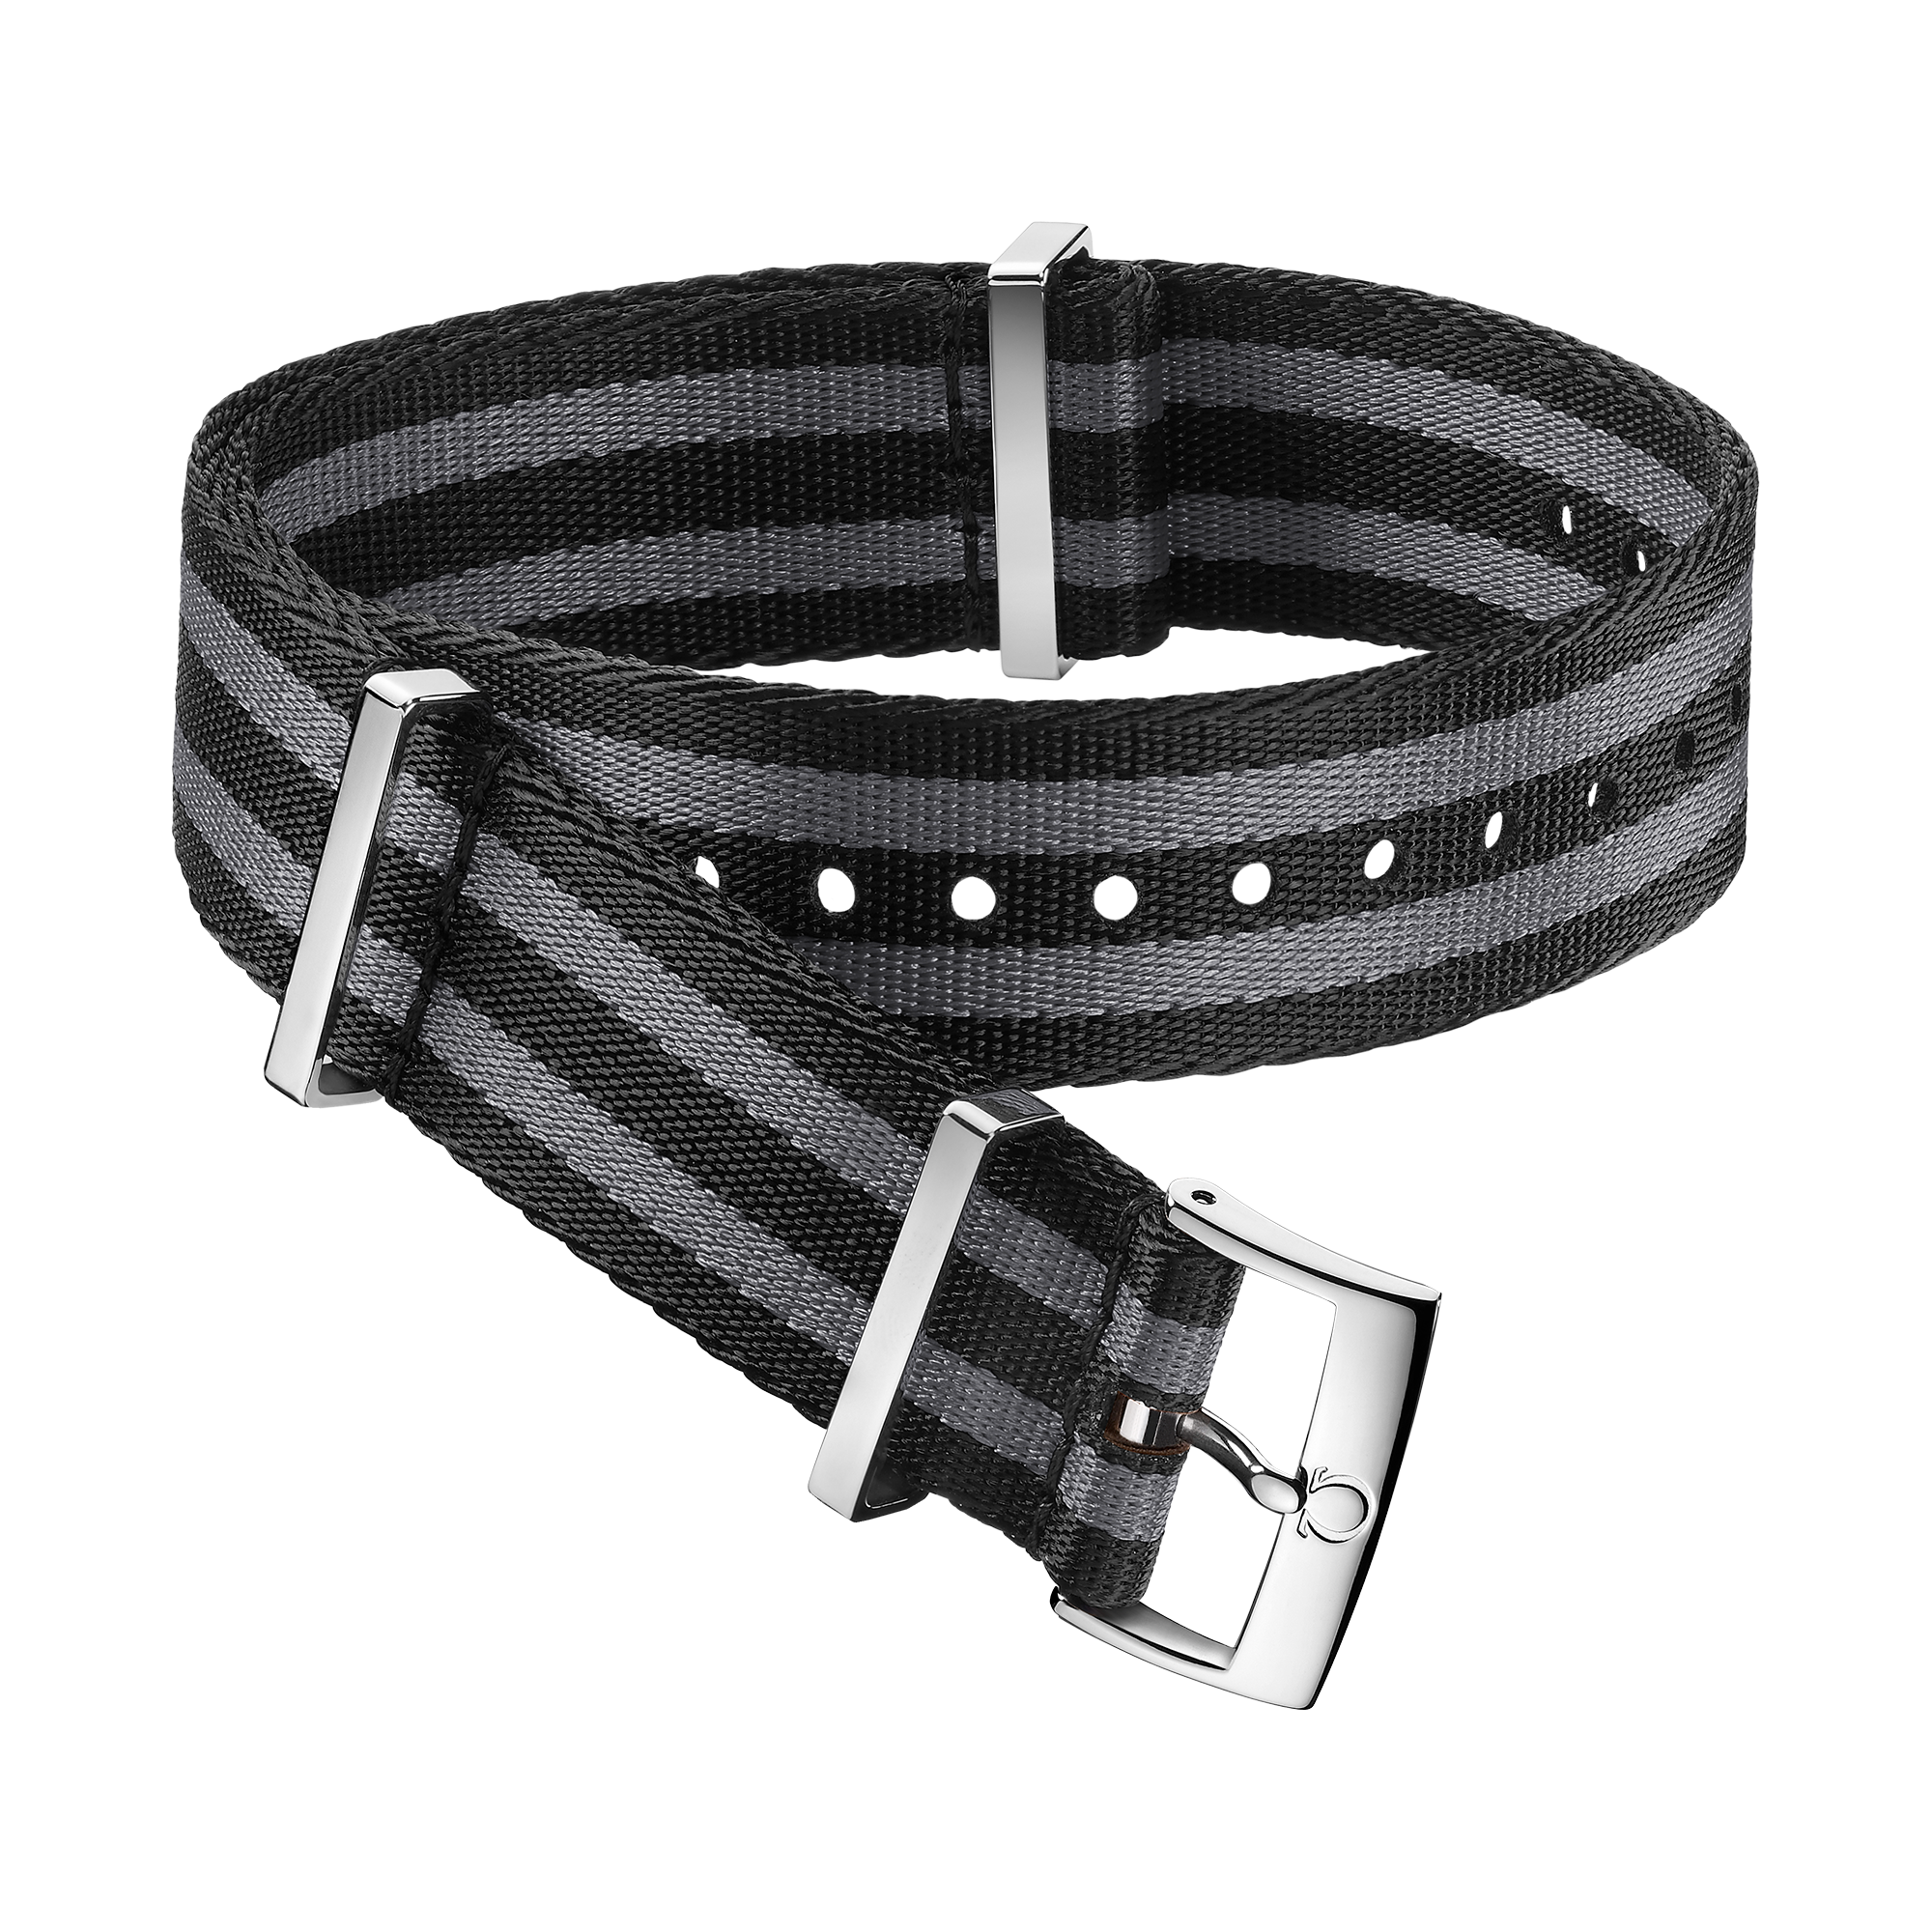 Bracelete NATO - Bracelete em poliamida preta e cinzenta com 5 faixas - 031ZSZ002045